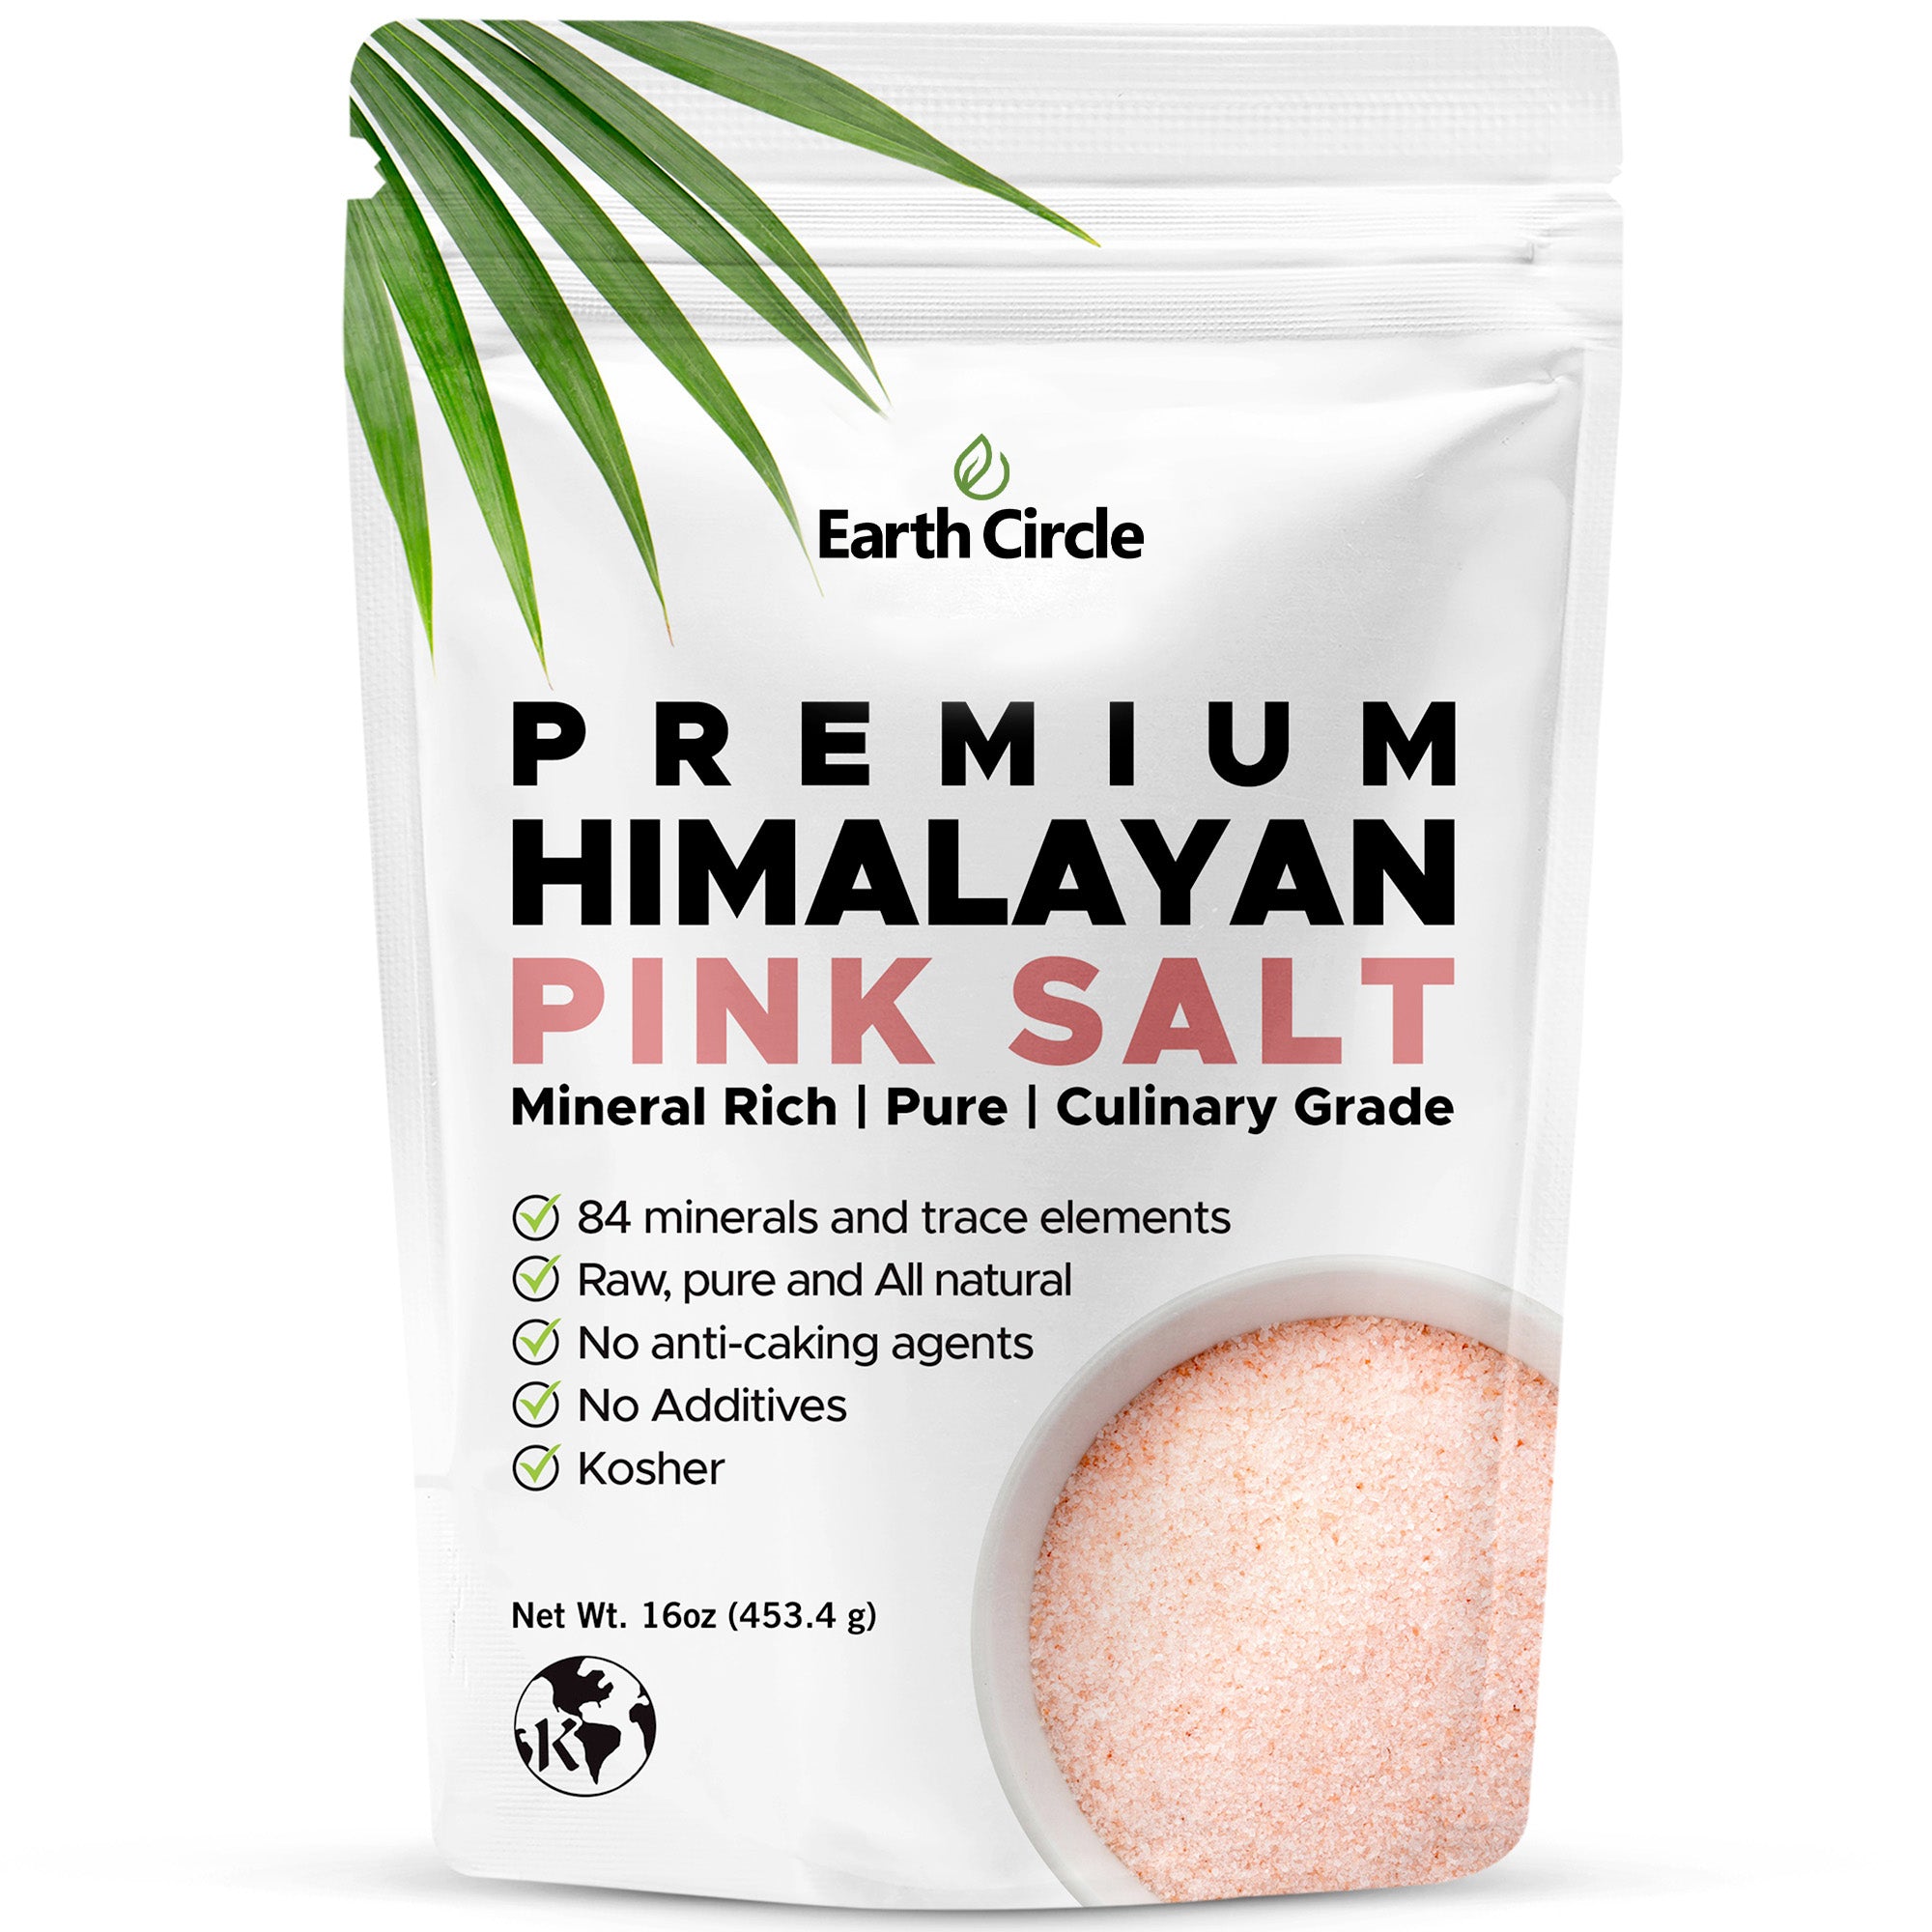 40 oz Himalayan Pink Salt Ground/ Sal Rosada de Himalaya Kosher